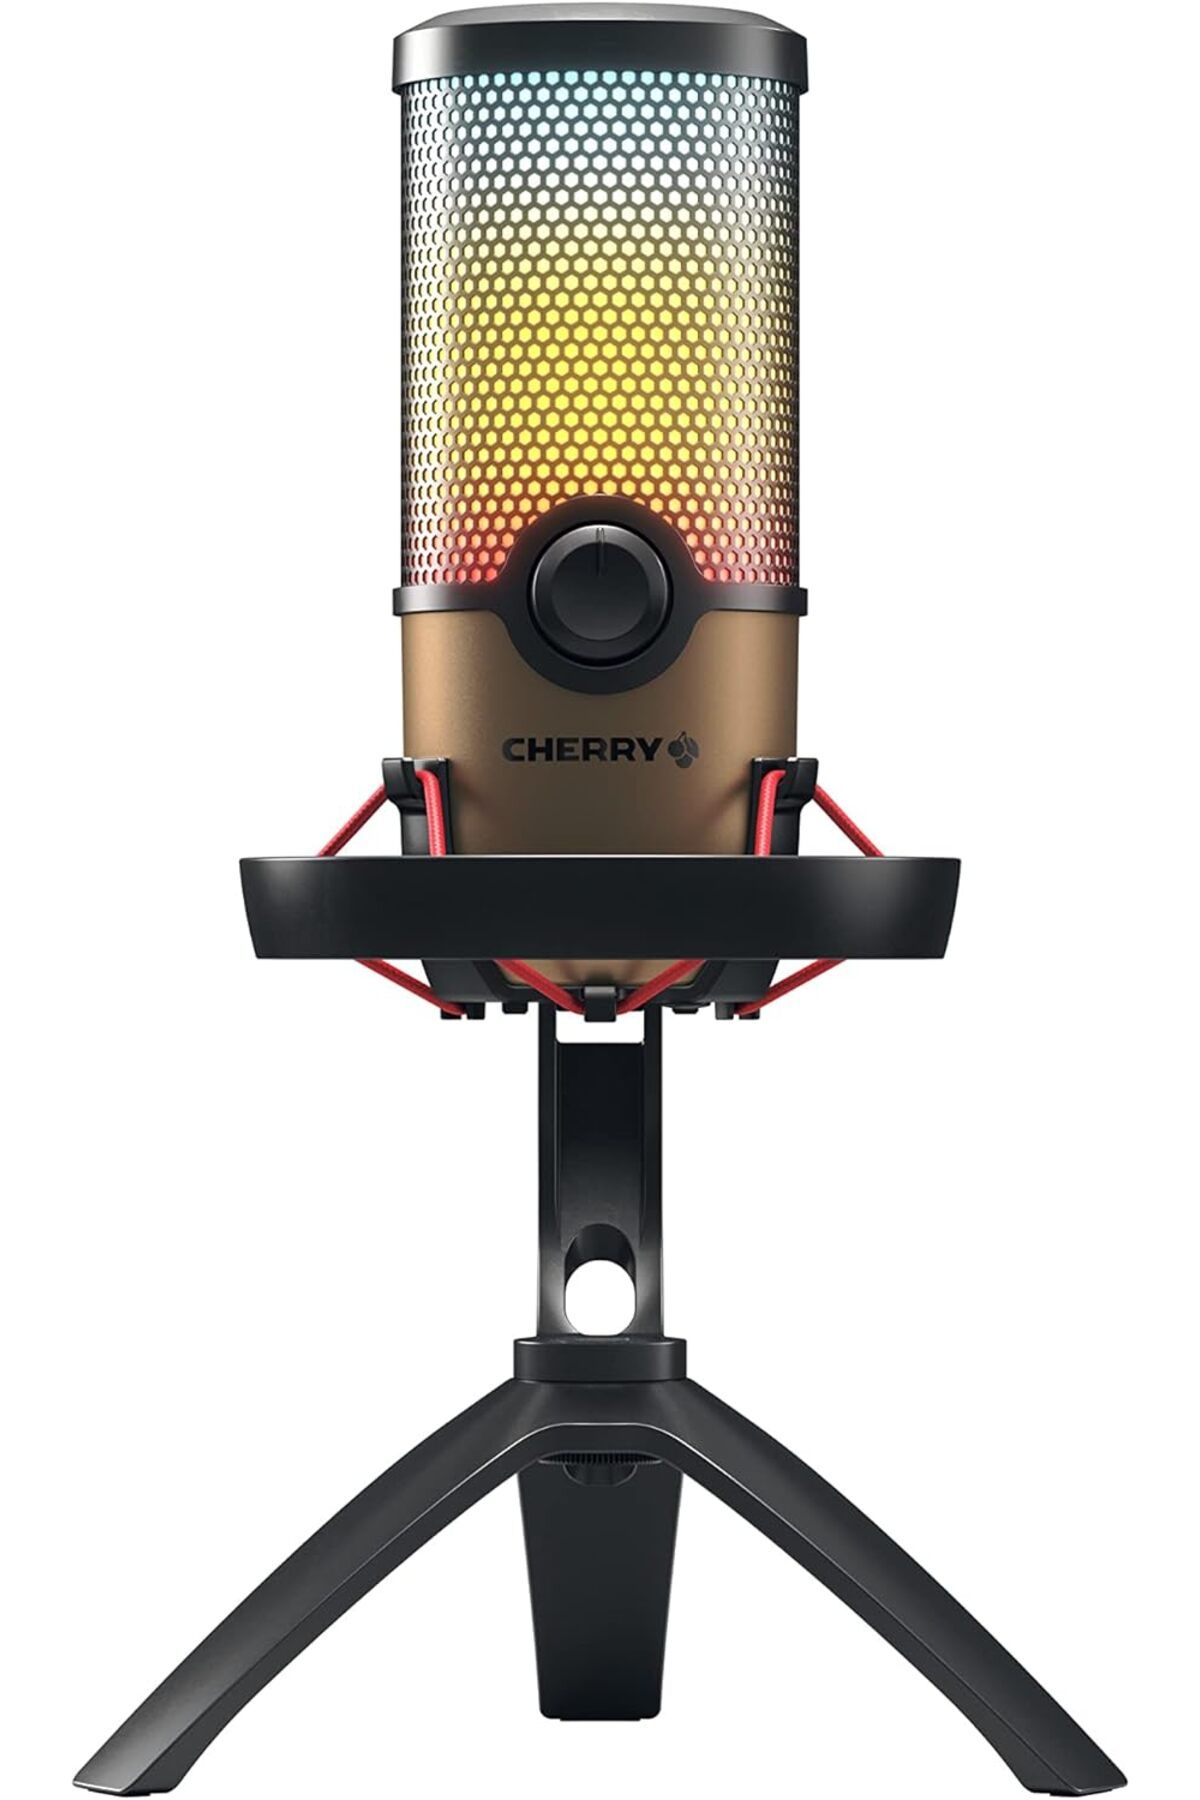 Cherry UM 9.0 PRO RGB Şok Montajlı USB Mikrofon Oyun, Yayın Akışı ve ASMR için İdeal